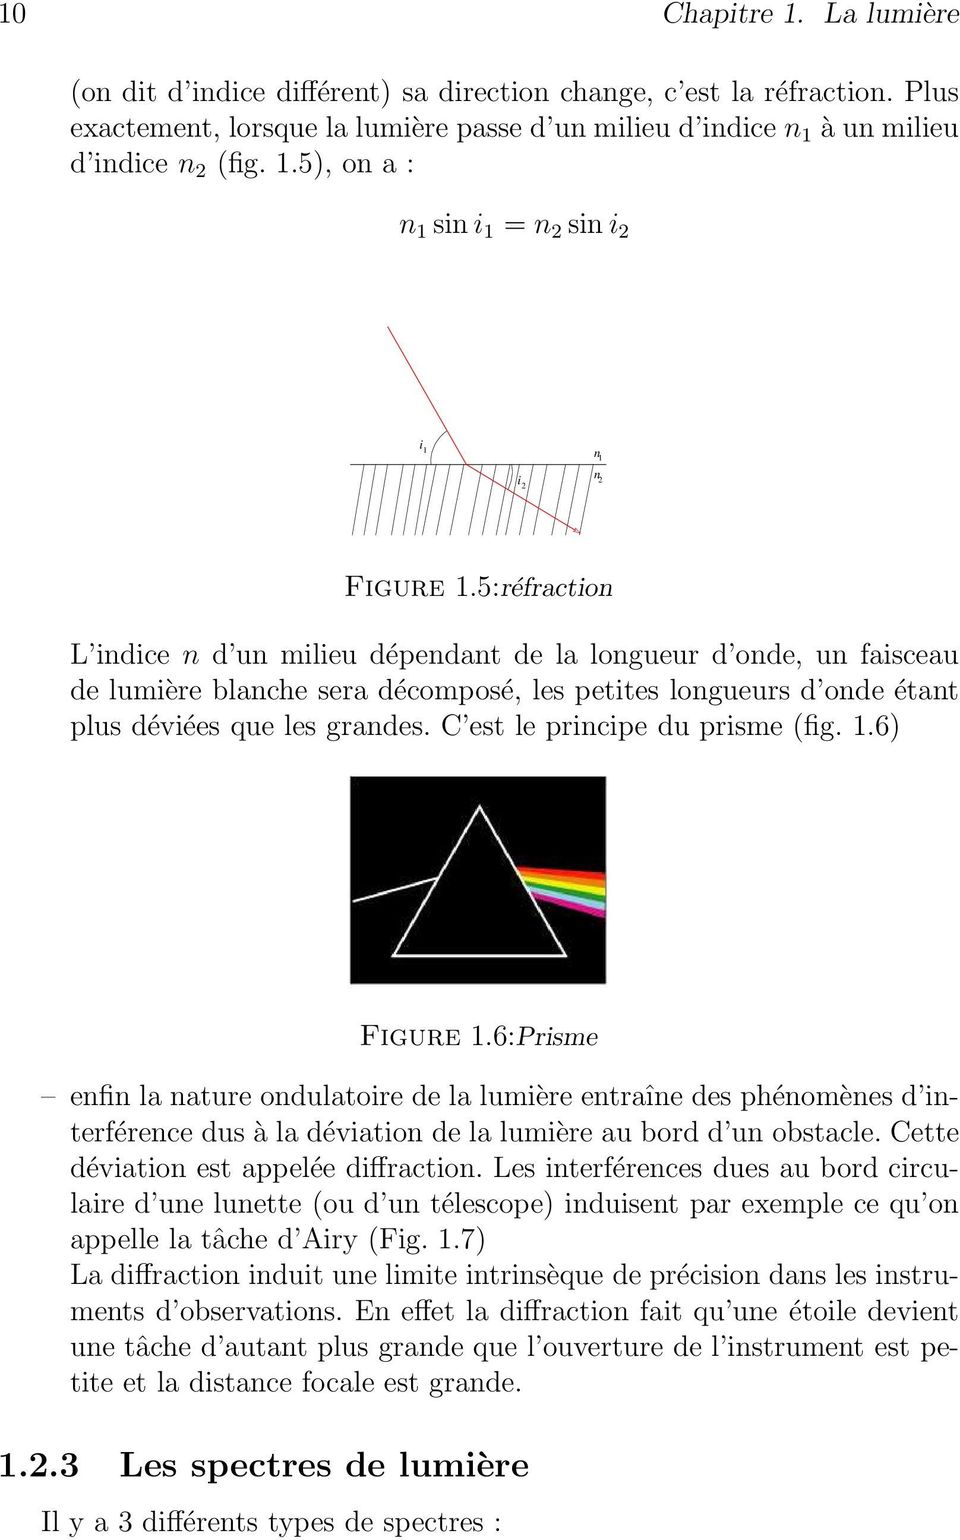 C est le principe du prisme (fig. 1.6) Figure 1.6:Prisme enfin la nature ondulatoire de la lumière entraîne des phénomènes d interférence dus à la déviation de la lumière au bord d un obstacle.